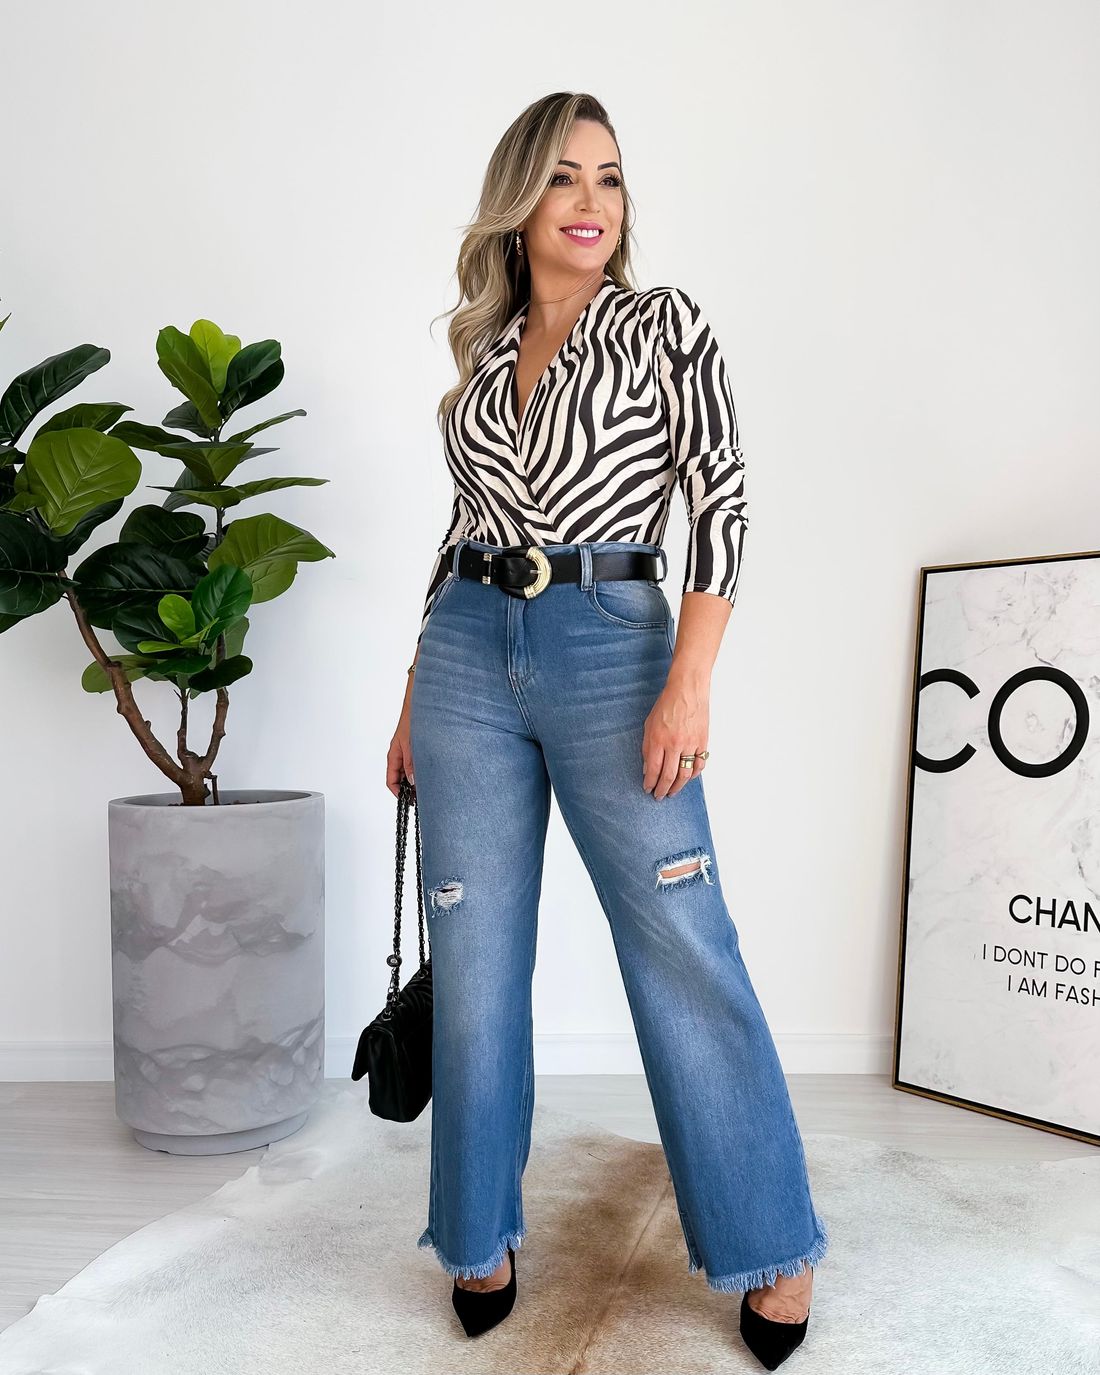 Calça jeans feminina justa: melhores modelos e como usar - Dicas e  tendências de calça jeans para mulheres